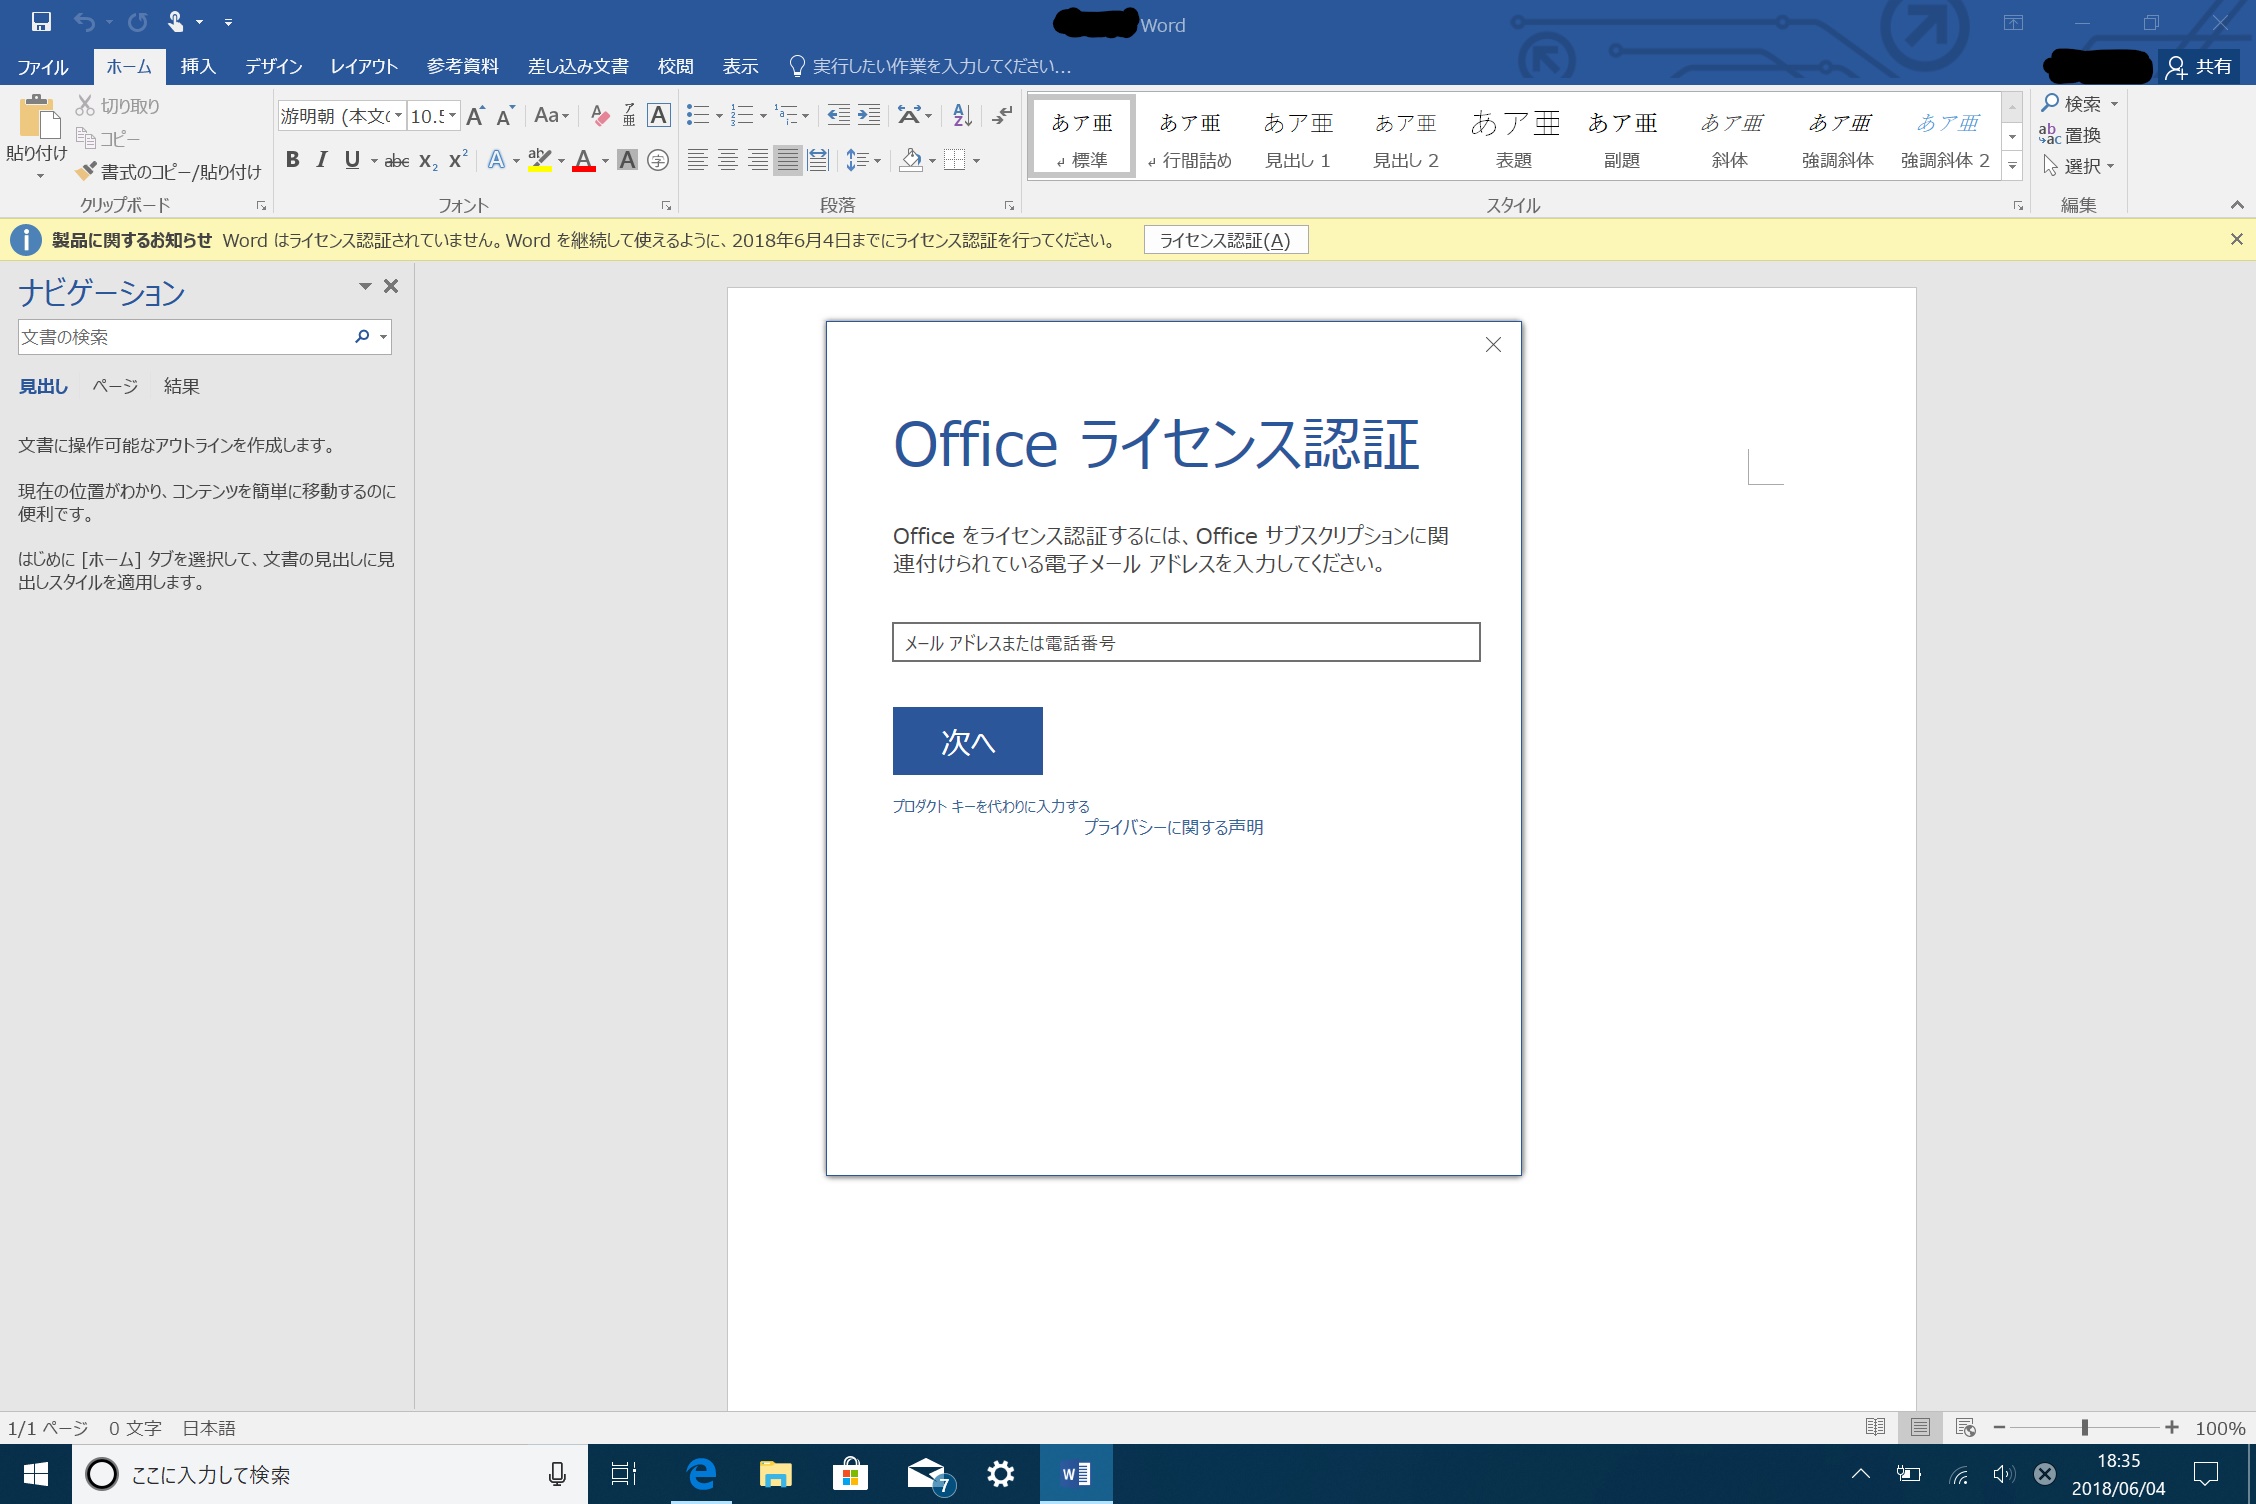 Microsoft Office Professional Plus 2016 のライセンス認証ができない 